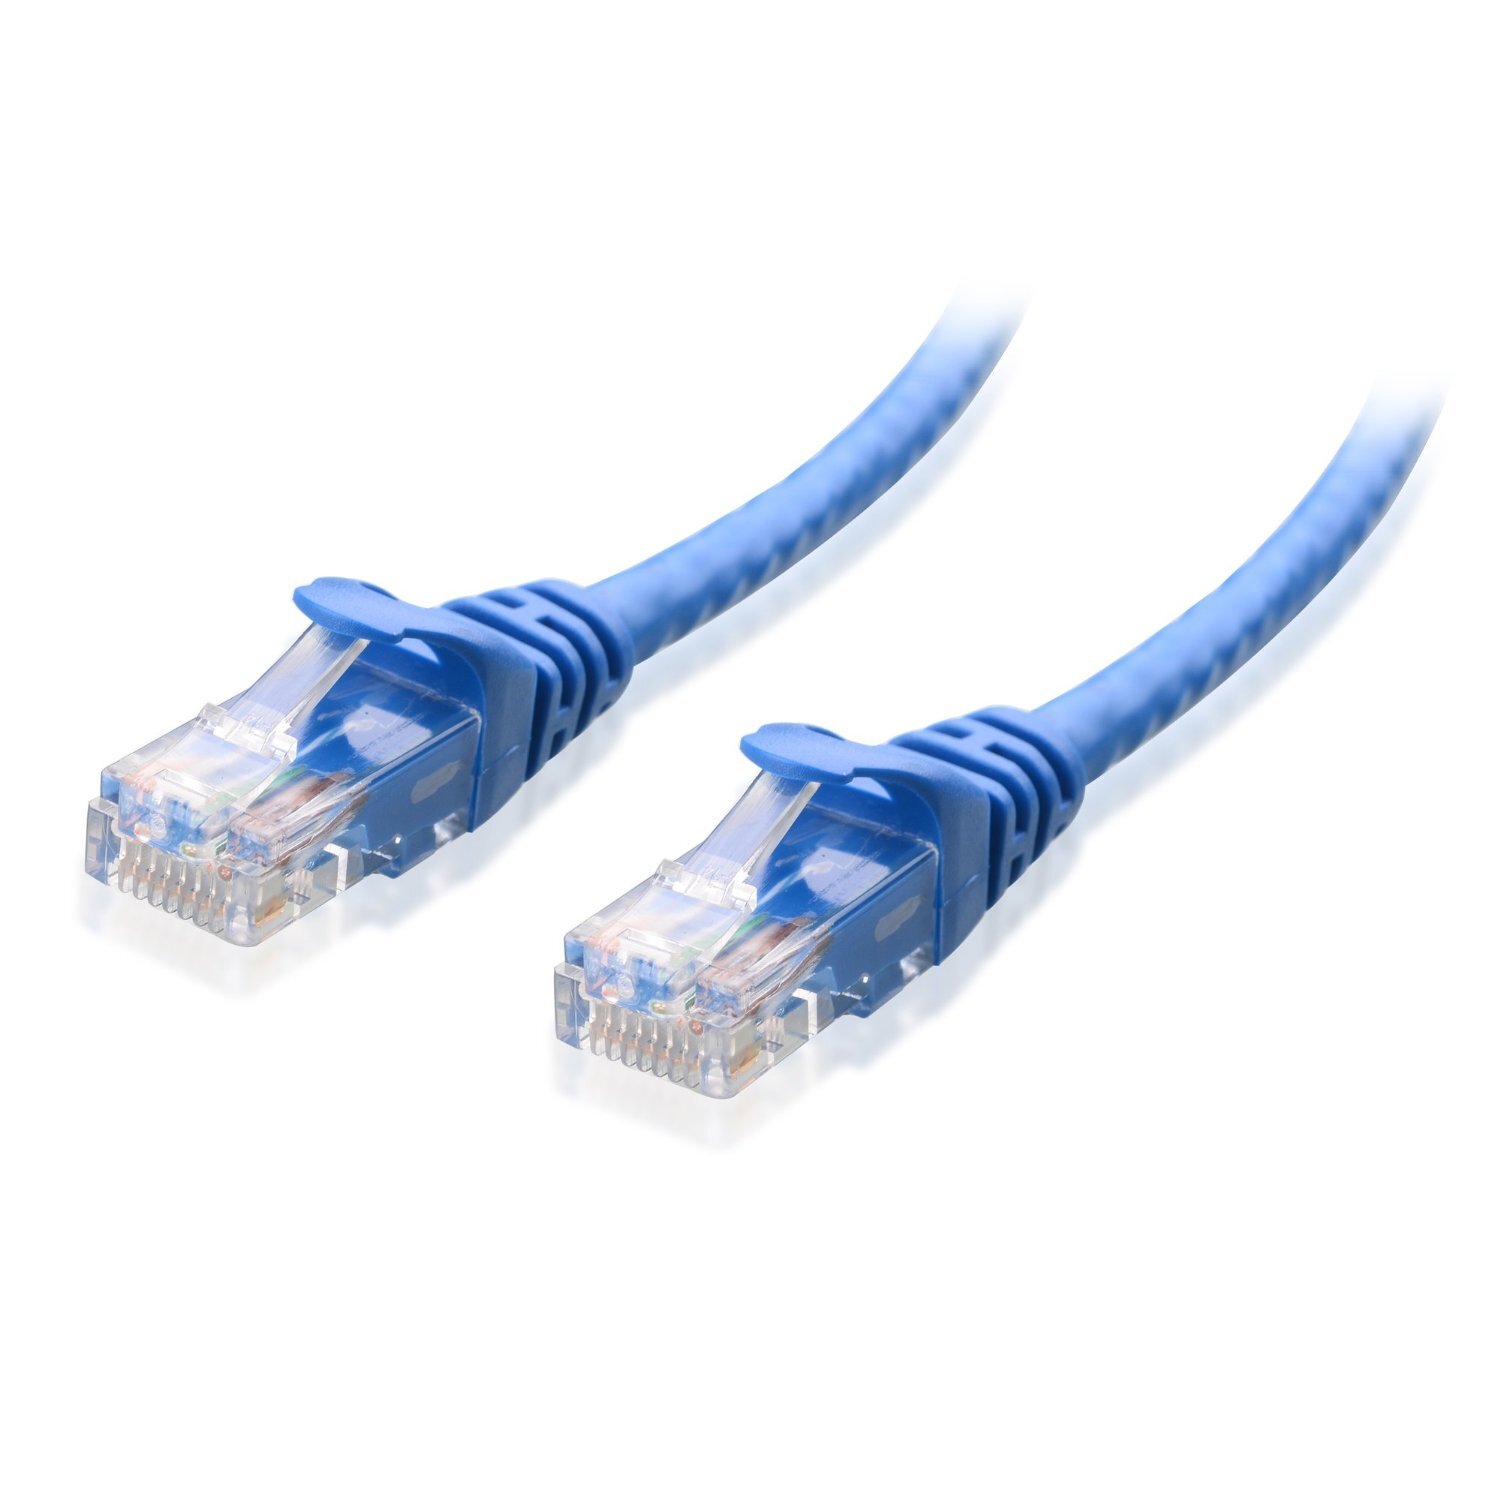 Astrotek CAT5e Cable 0.5m/50cm - Blue Color Premium RJ45 Ethernet Network LAN UTP Patch Cord 26AWG